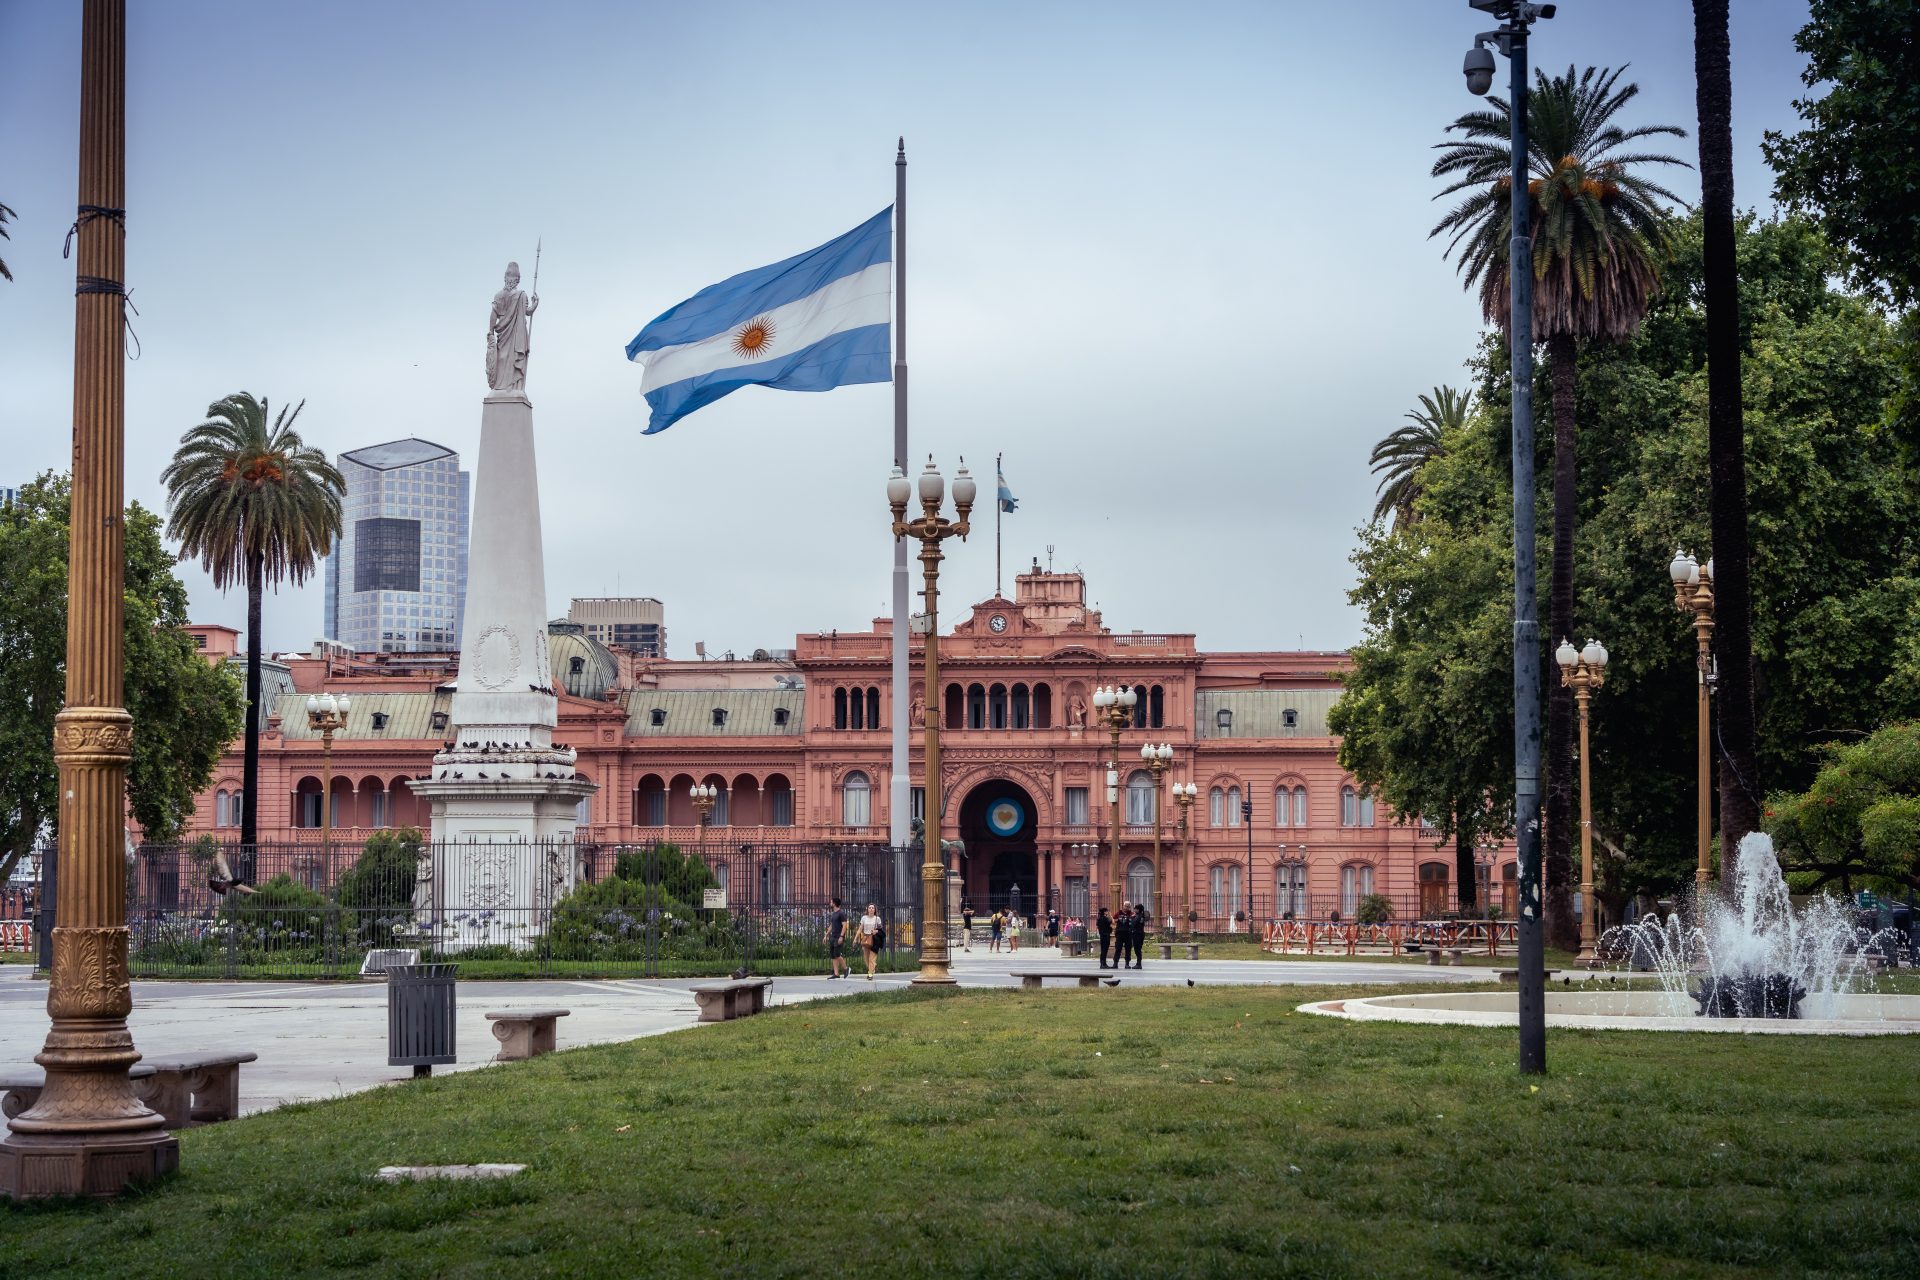 Argentinien: Schwer zu sagen, aber teuer